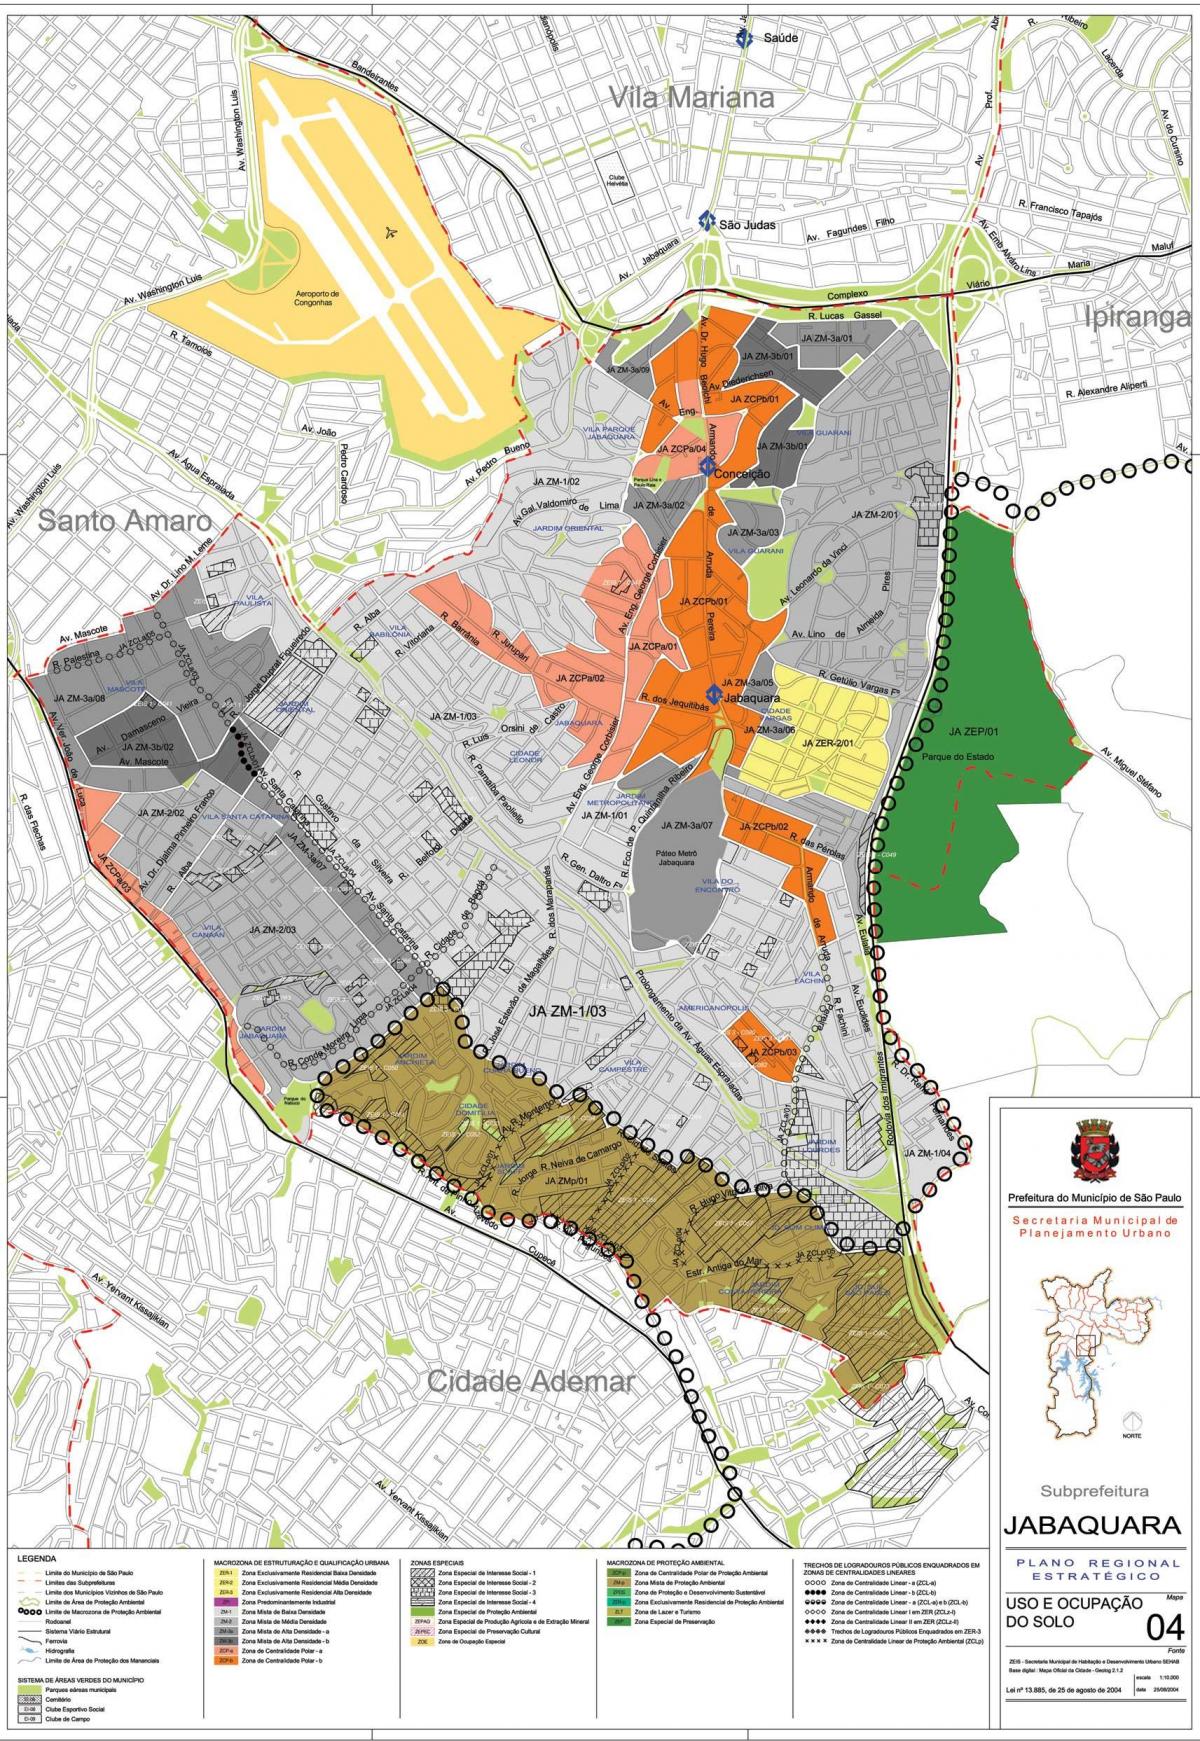 Mappa di Jabaquara São Paulo - Occupazione del suolo